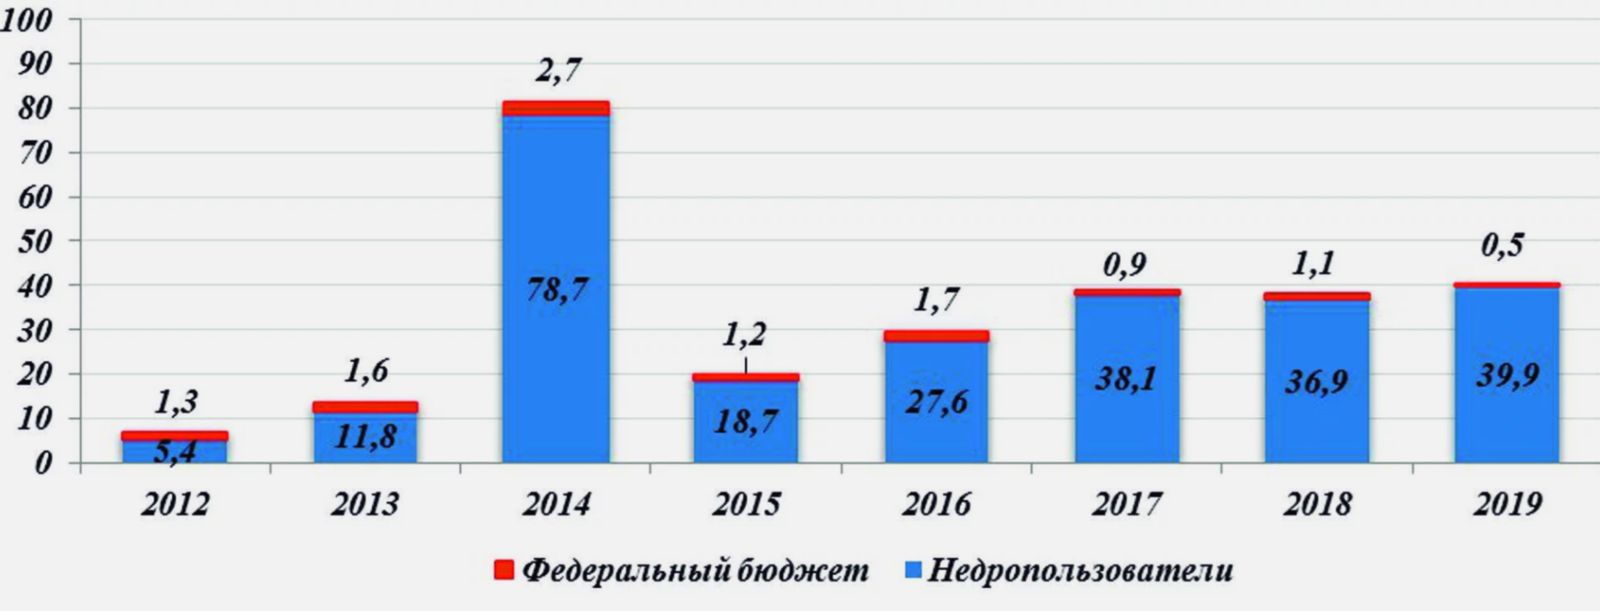 Затраты на ГРР на арктическом шельфе РФ по источникам финансирования (млрд рублей) за 2012–2019 г.